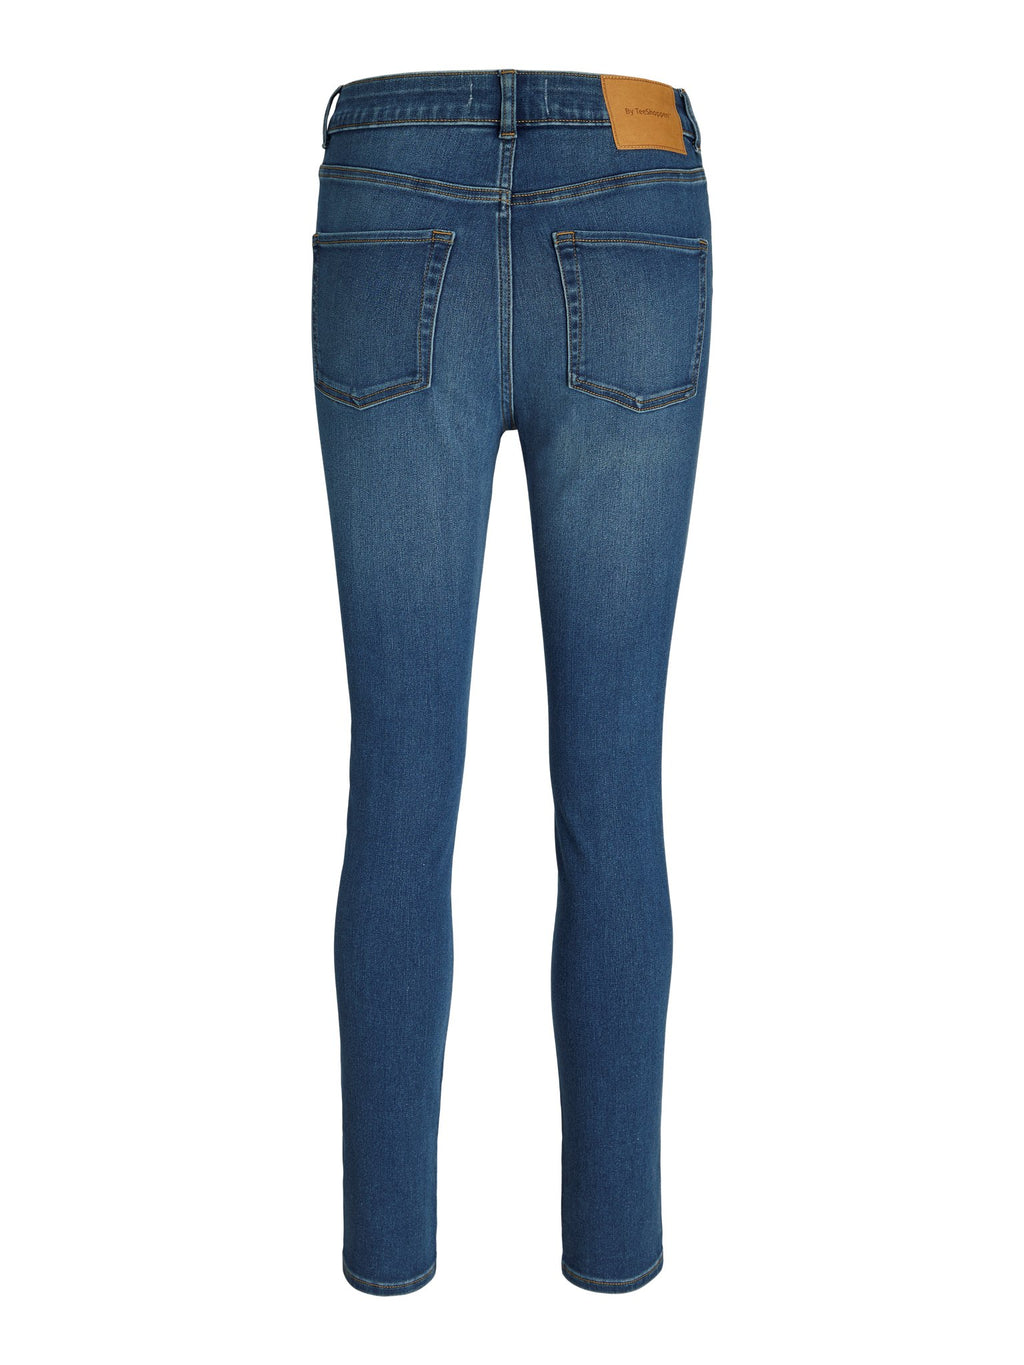 El rendimiento original de los jeans delgados - mezclilla azul claro